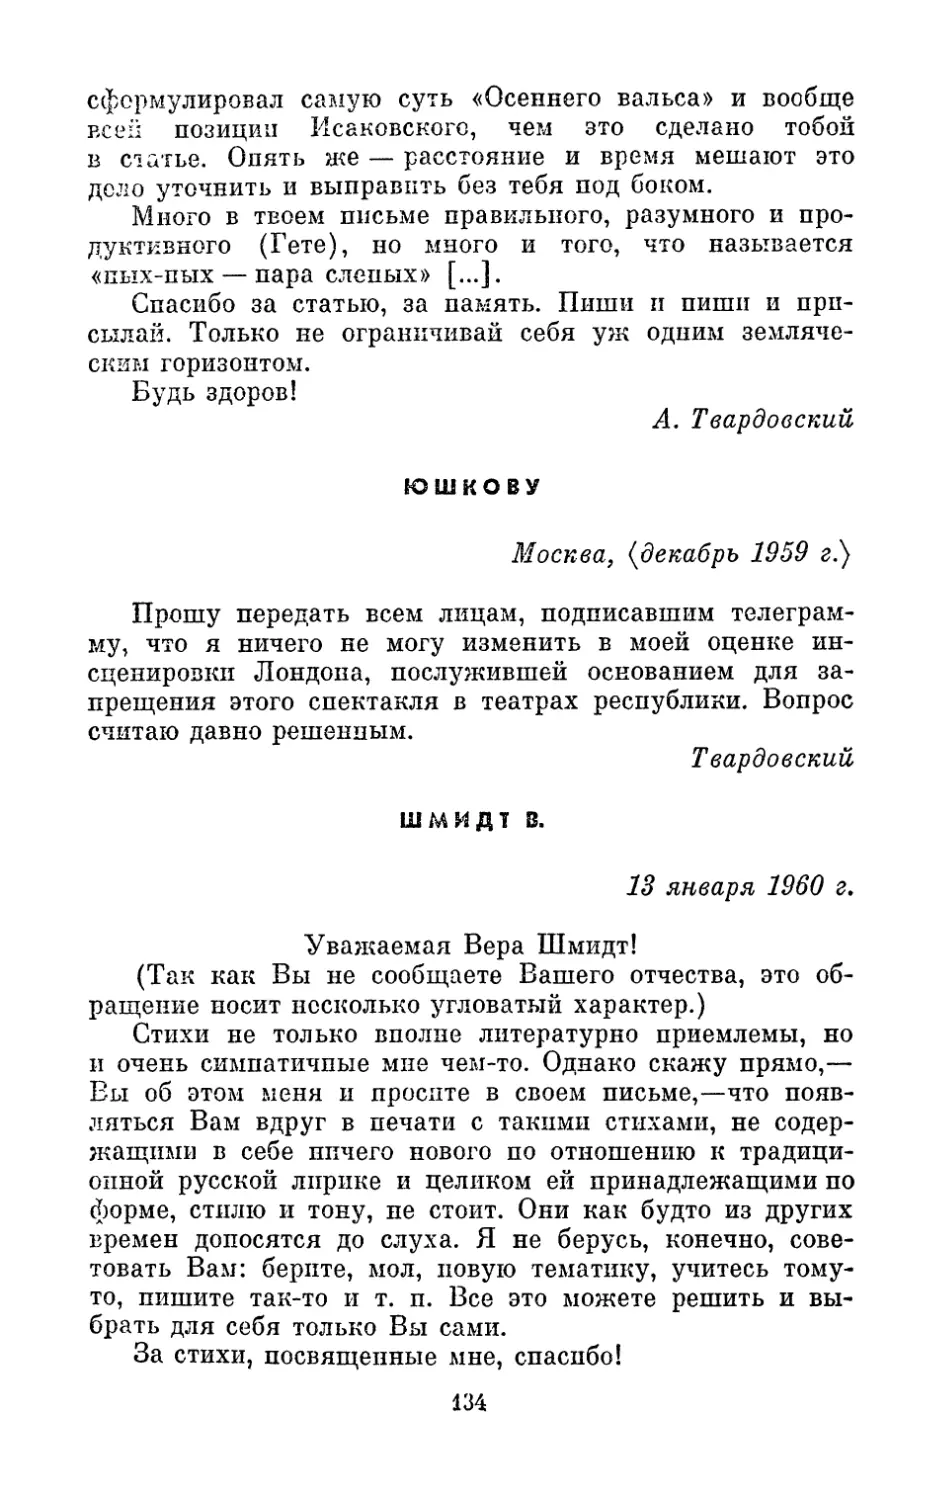 Юшкову, <декабрь 1959 г.>
Шмидт В., 13 января 1960 г.